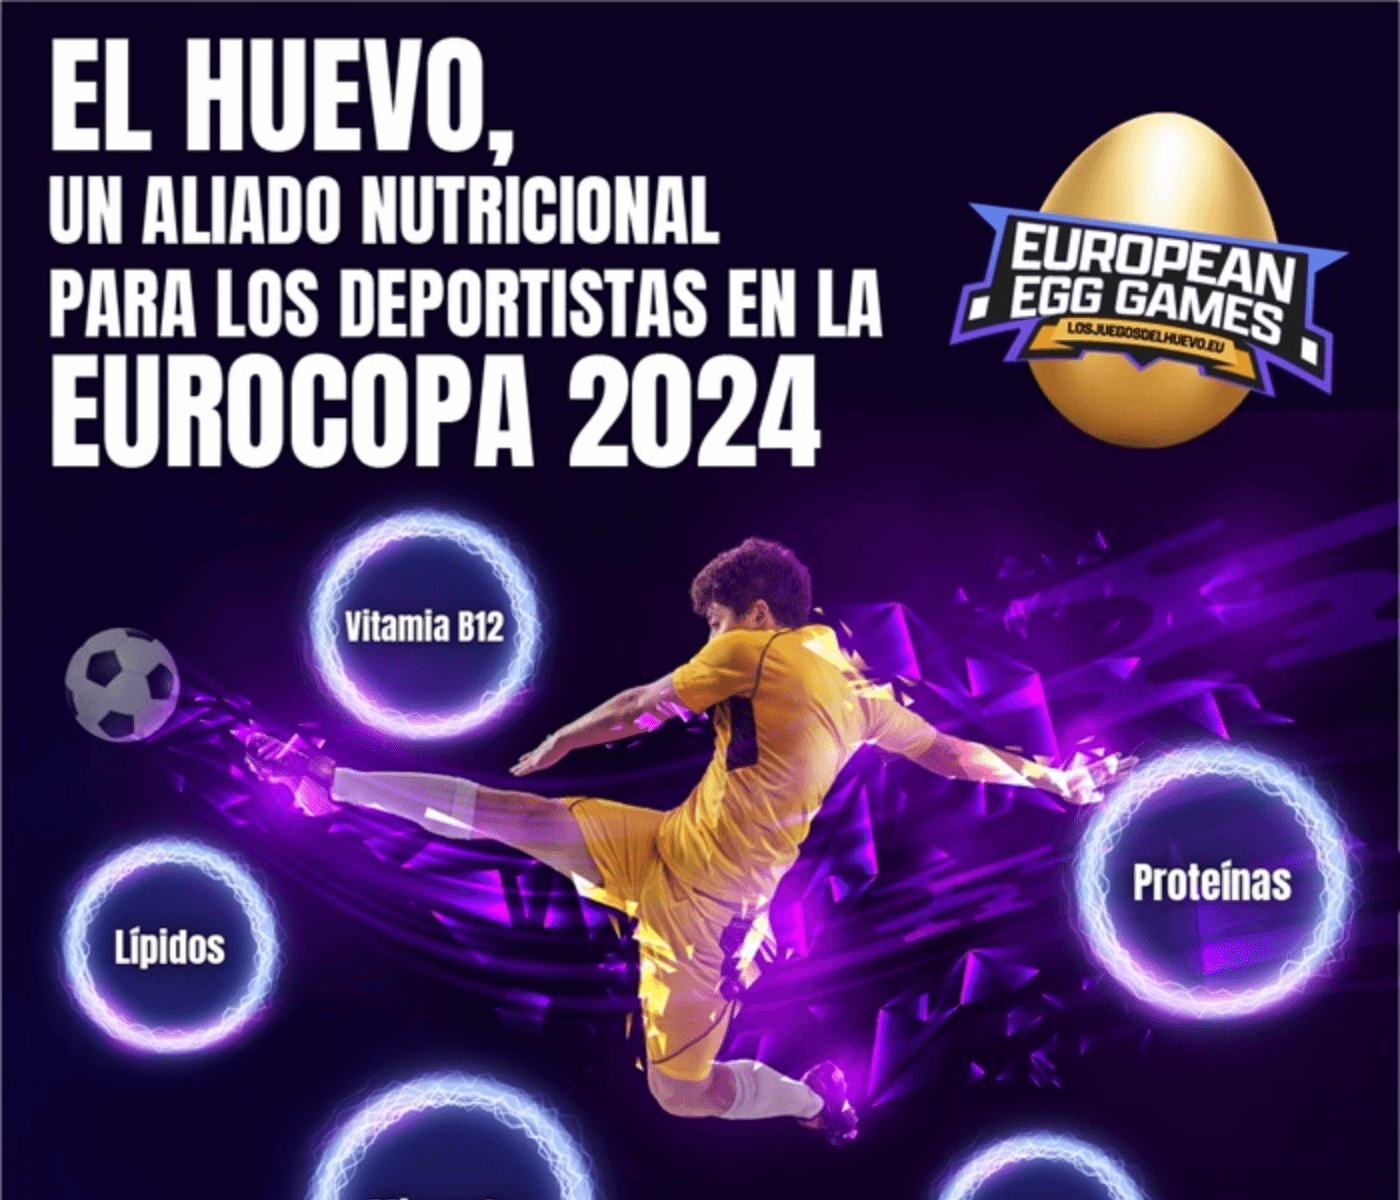 Huevo y deportistas: un equipo excepcional para triunfar en la Eurocopa 2024